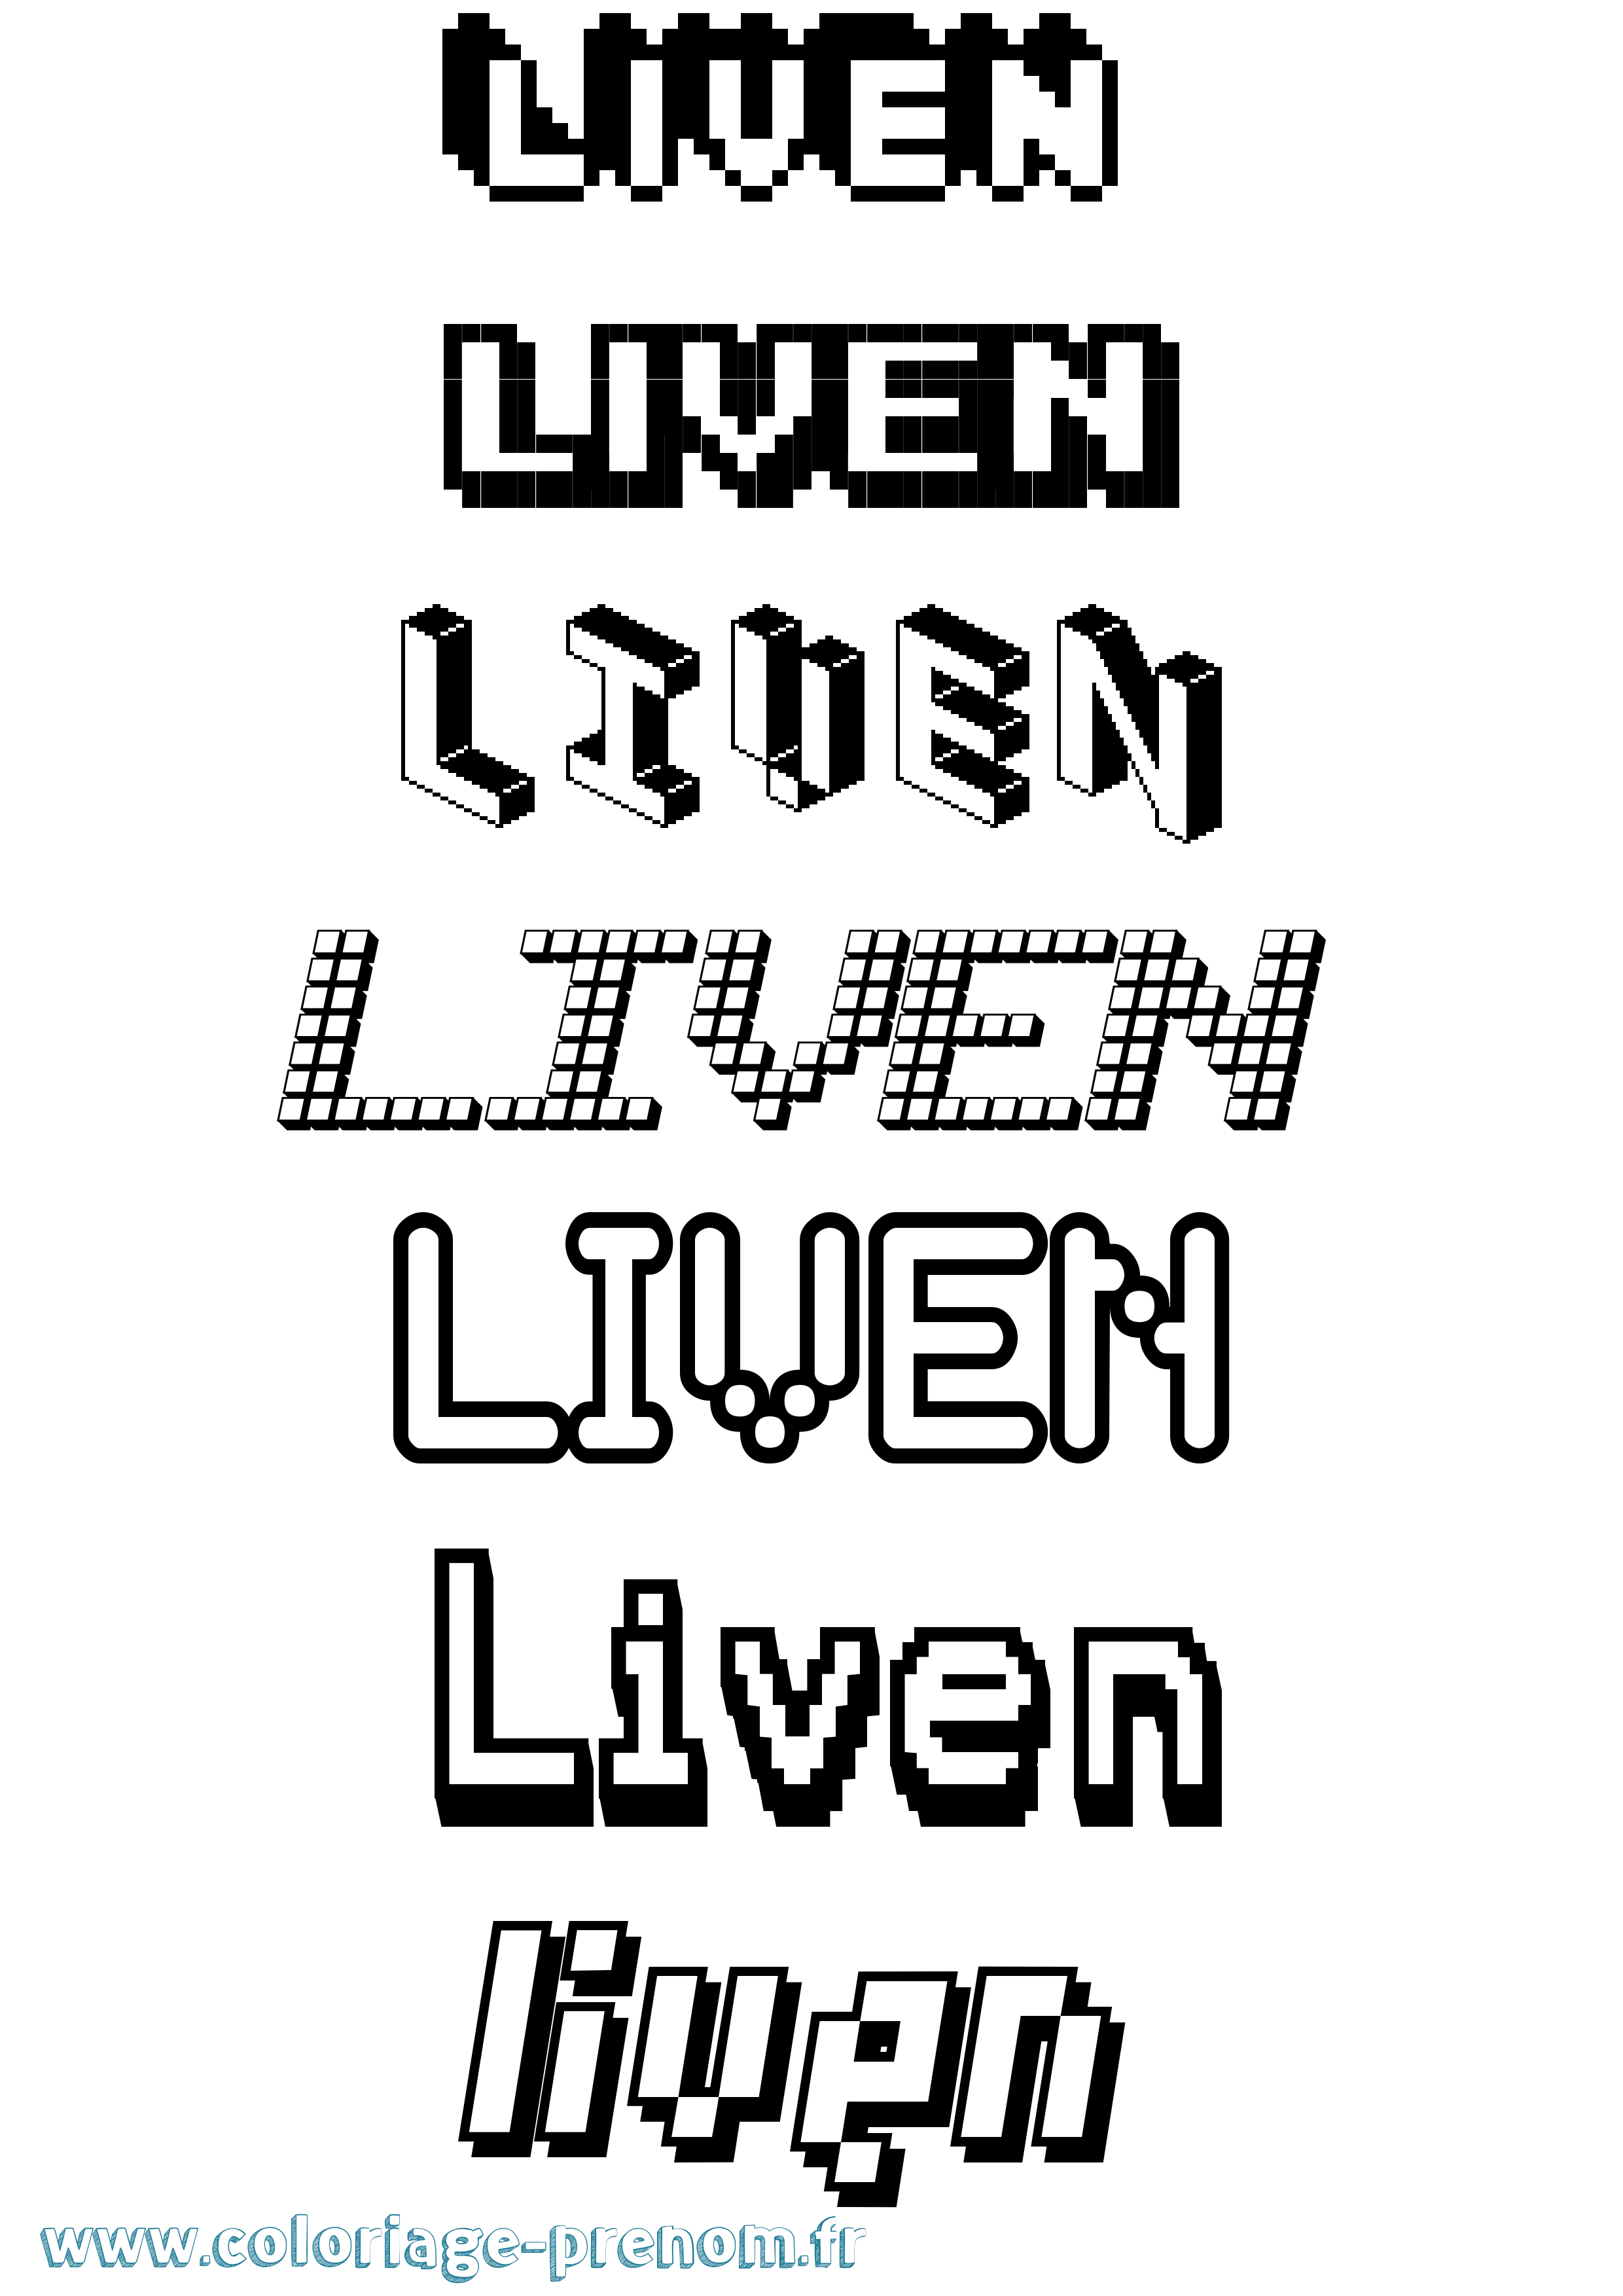 Coloriage prénom Liven Pixel